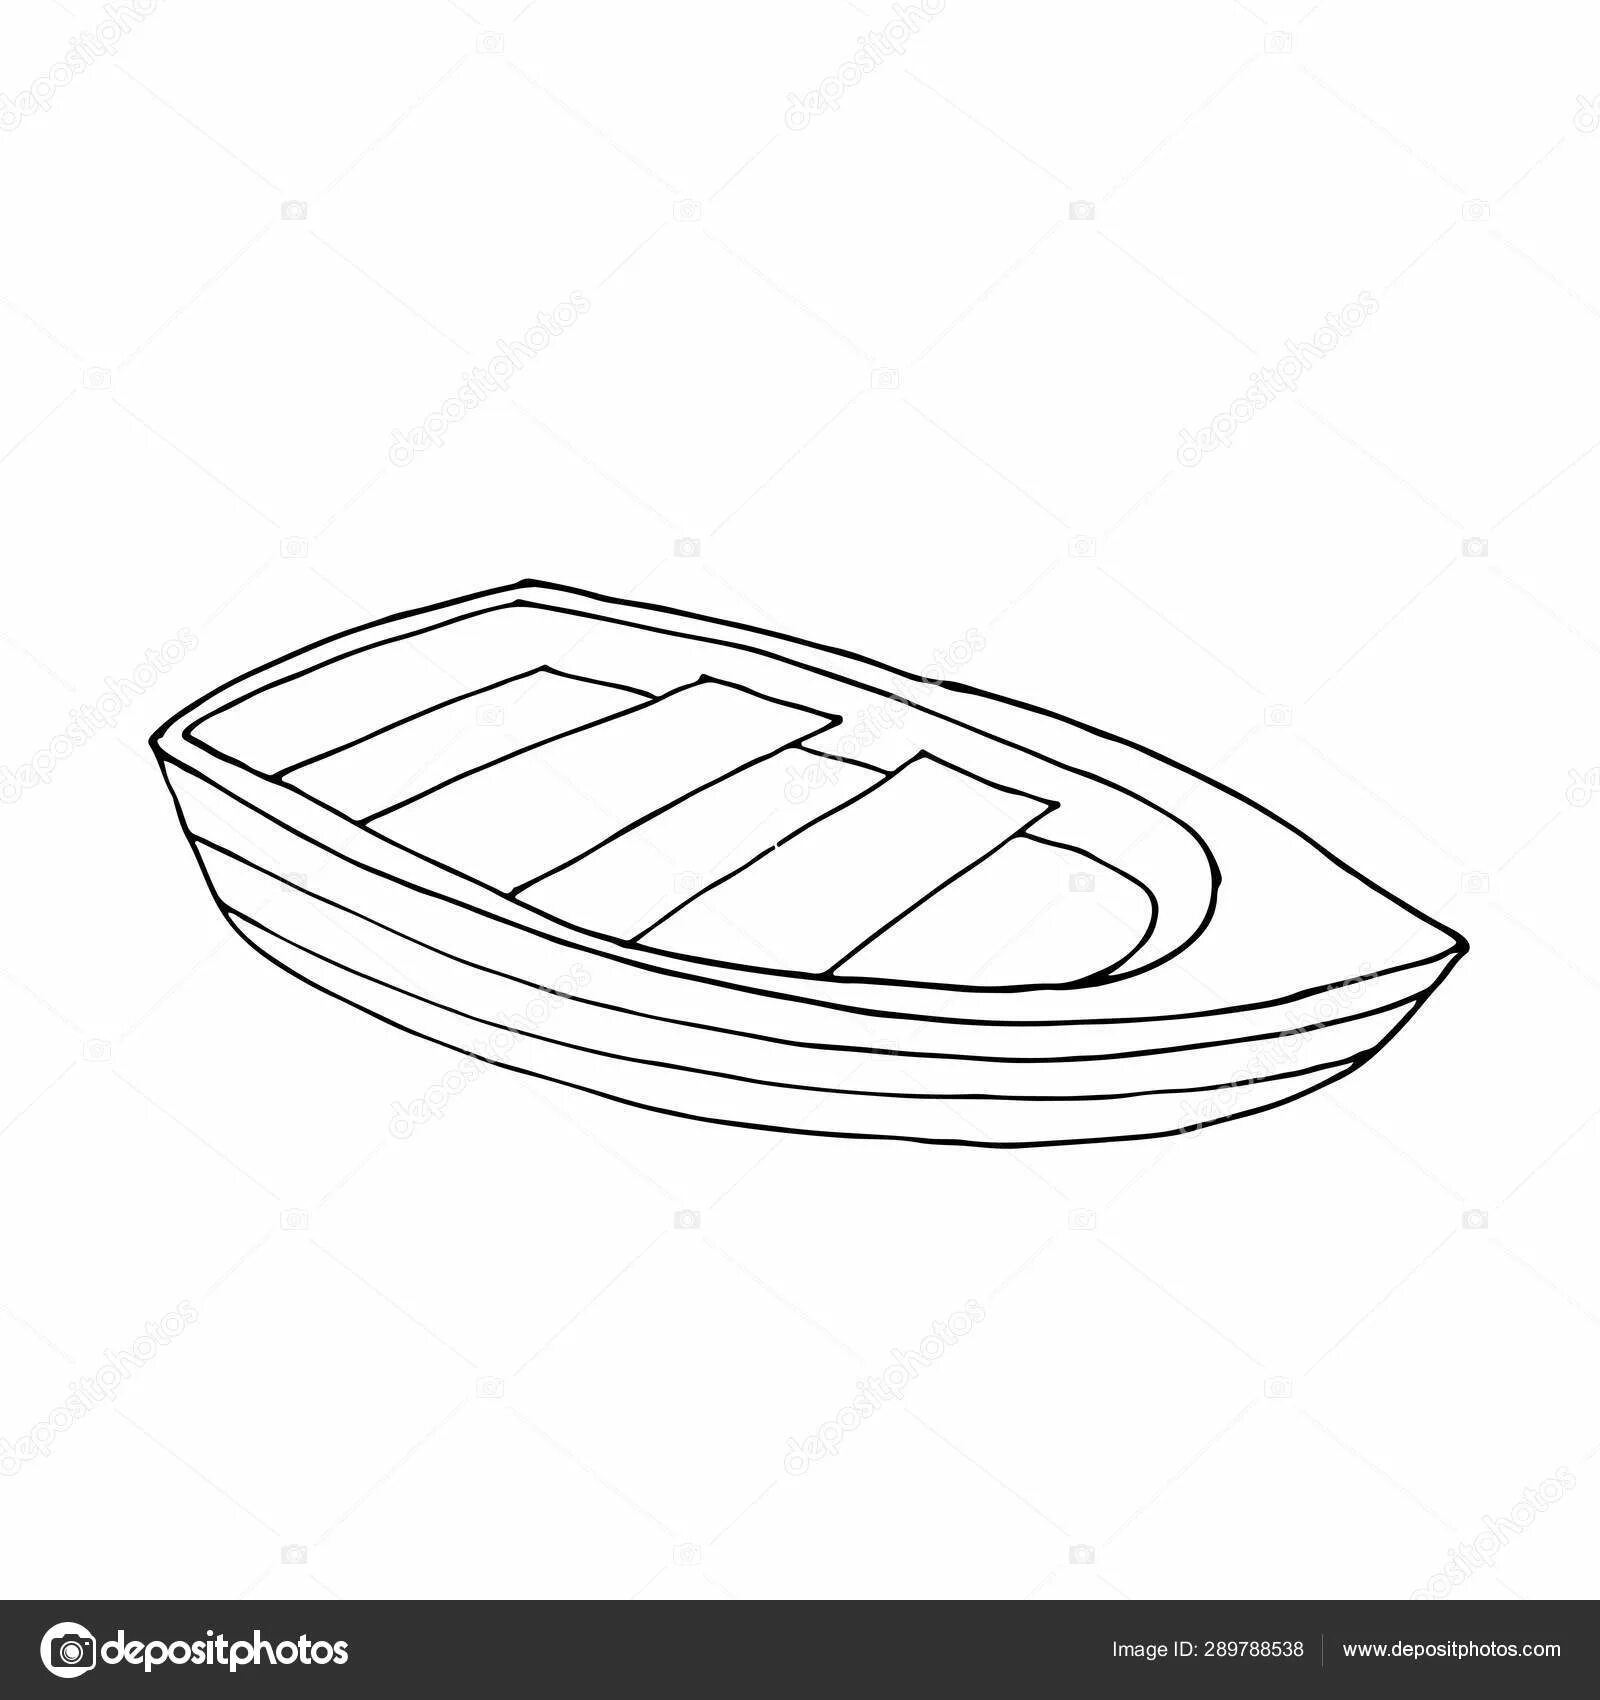 Boat #4